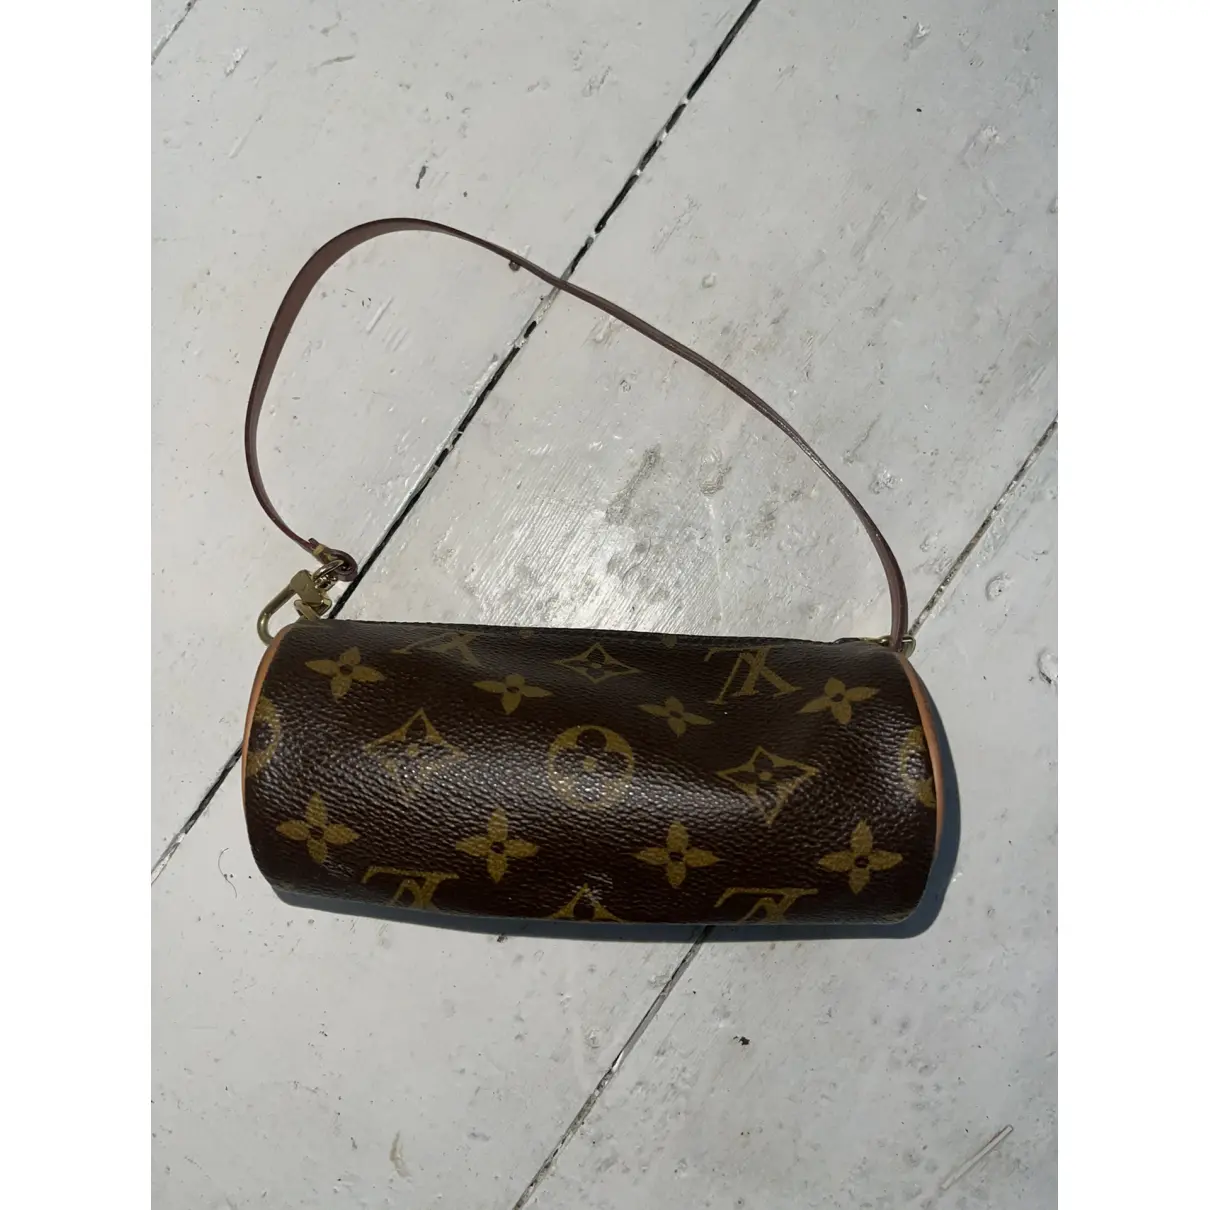 Buy Louis Vuitton Papillon leather mini bag online